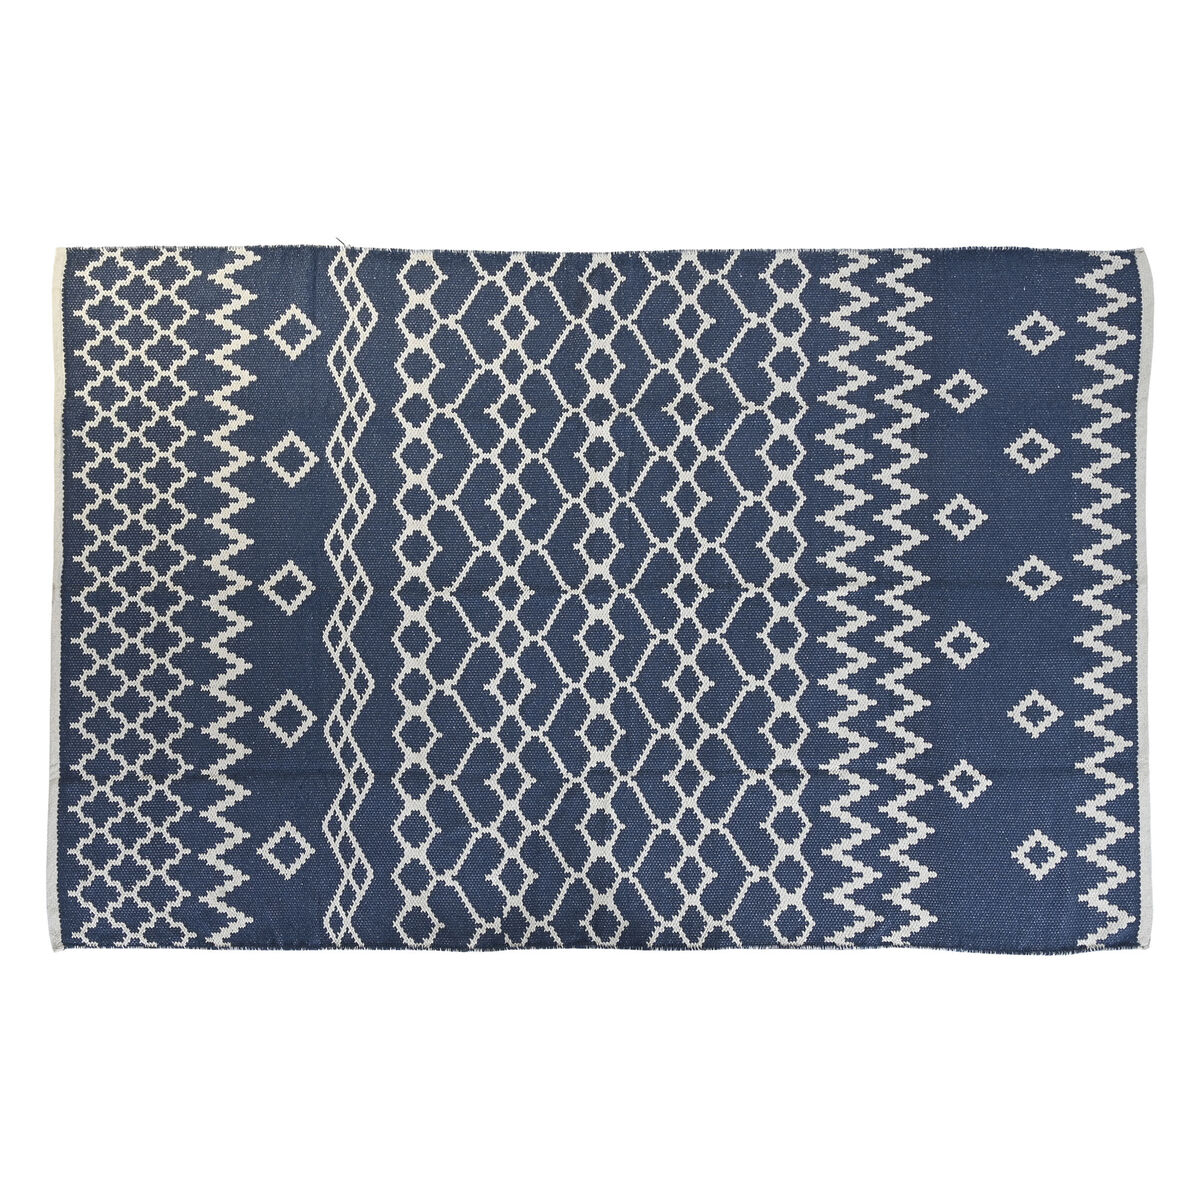 Teppich Skandinavisches Design Blau Wei Araber 120x180 cm Wikinger